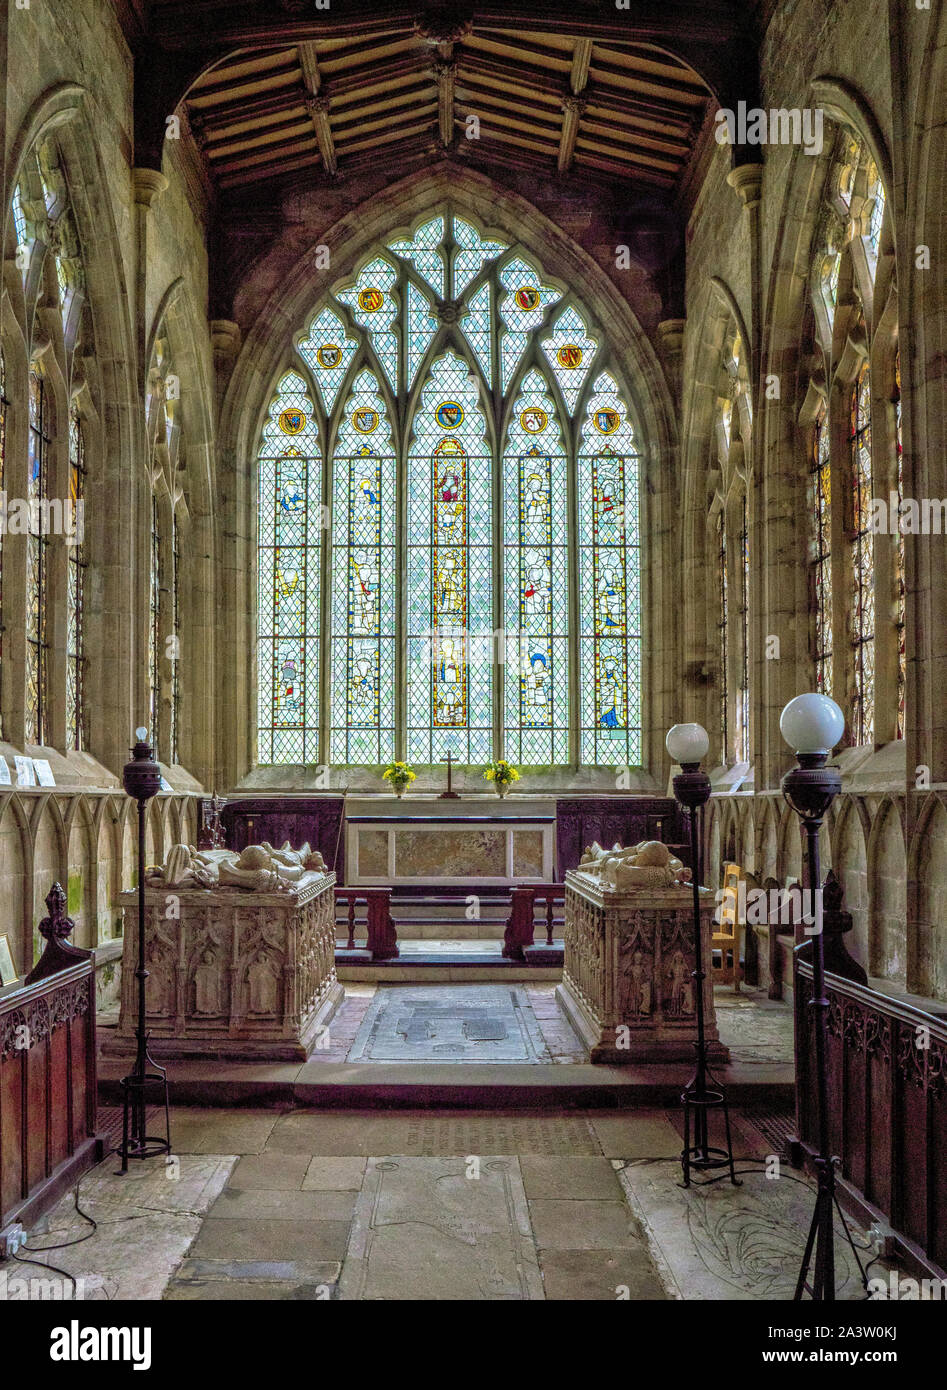 Interno del Coro di Santa Maria e San Barlock chiesa parrocchiale a Norbury nel Derbyshire Regno Unito con la sua effigie medievale tombe e grande oriente windows Foto Stock